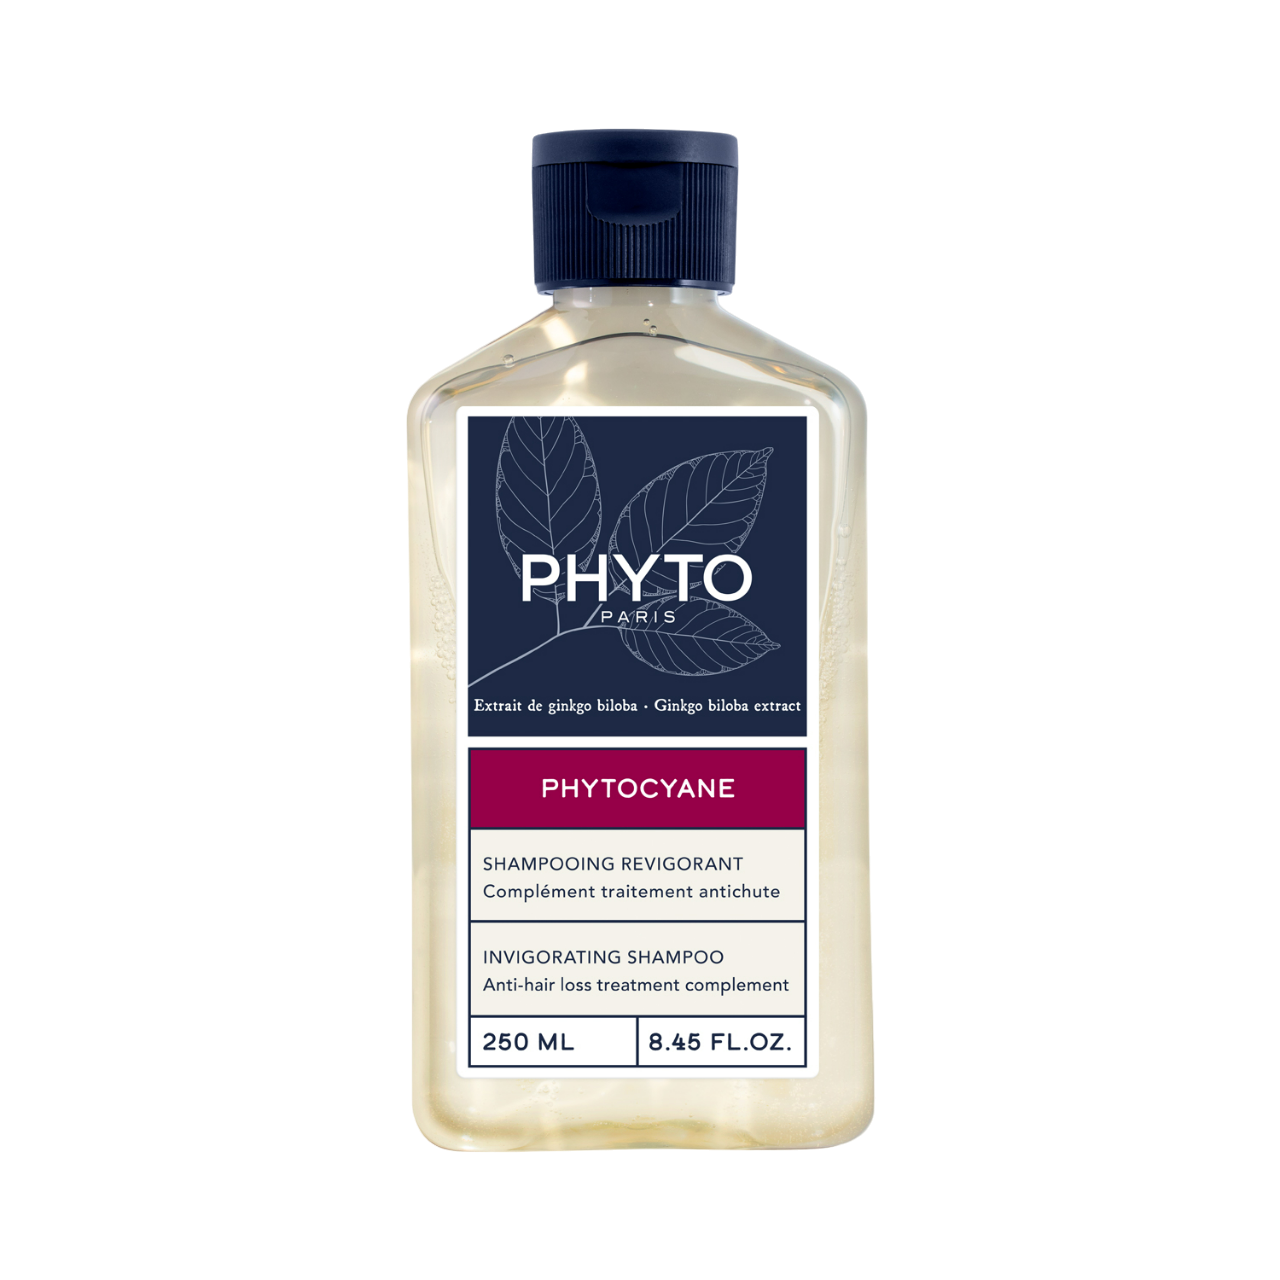 шампунь для волос vonu шампунь с экстрактом золотого женьшеня против выпадения и для роста волос gold ginseng Восстанавливающий женский шампунь для волос phyto phytocyane Phyto Cyane, 250 мл